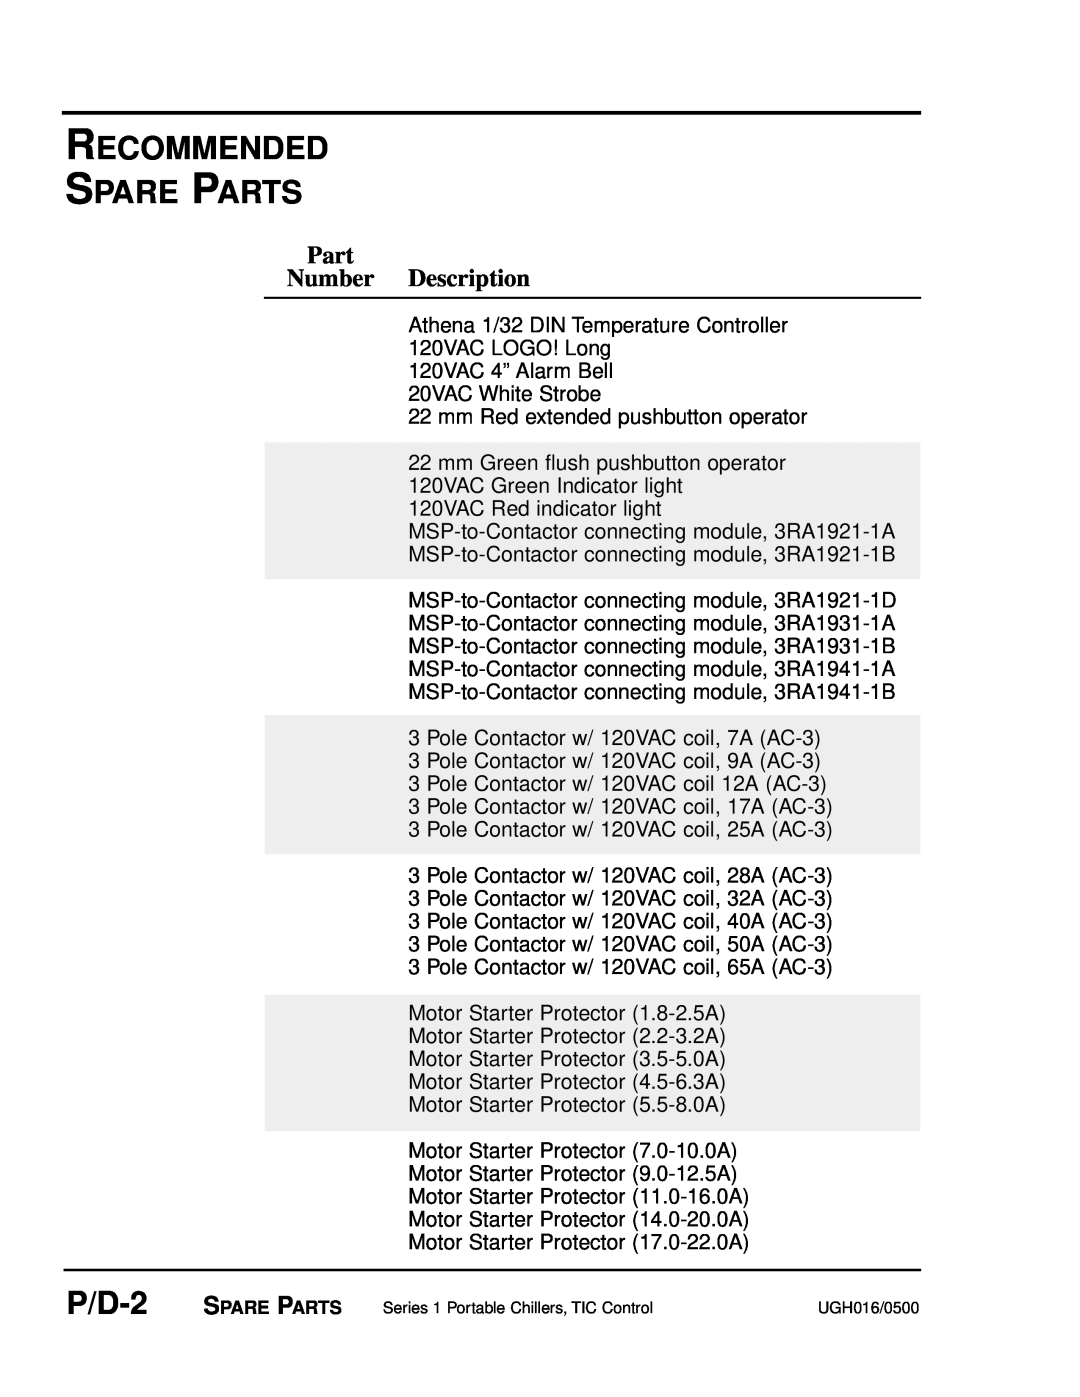 Conair UGH016/0500 manual Recommended Spare Parts, P/D-2, Part Number Description 